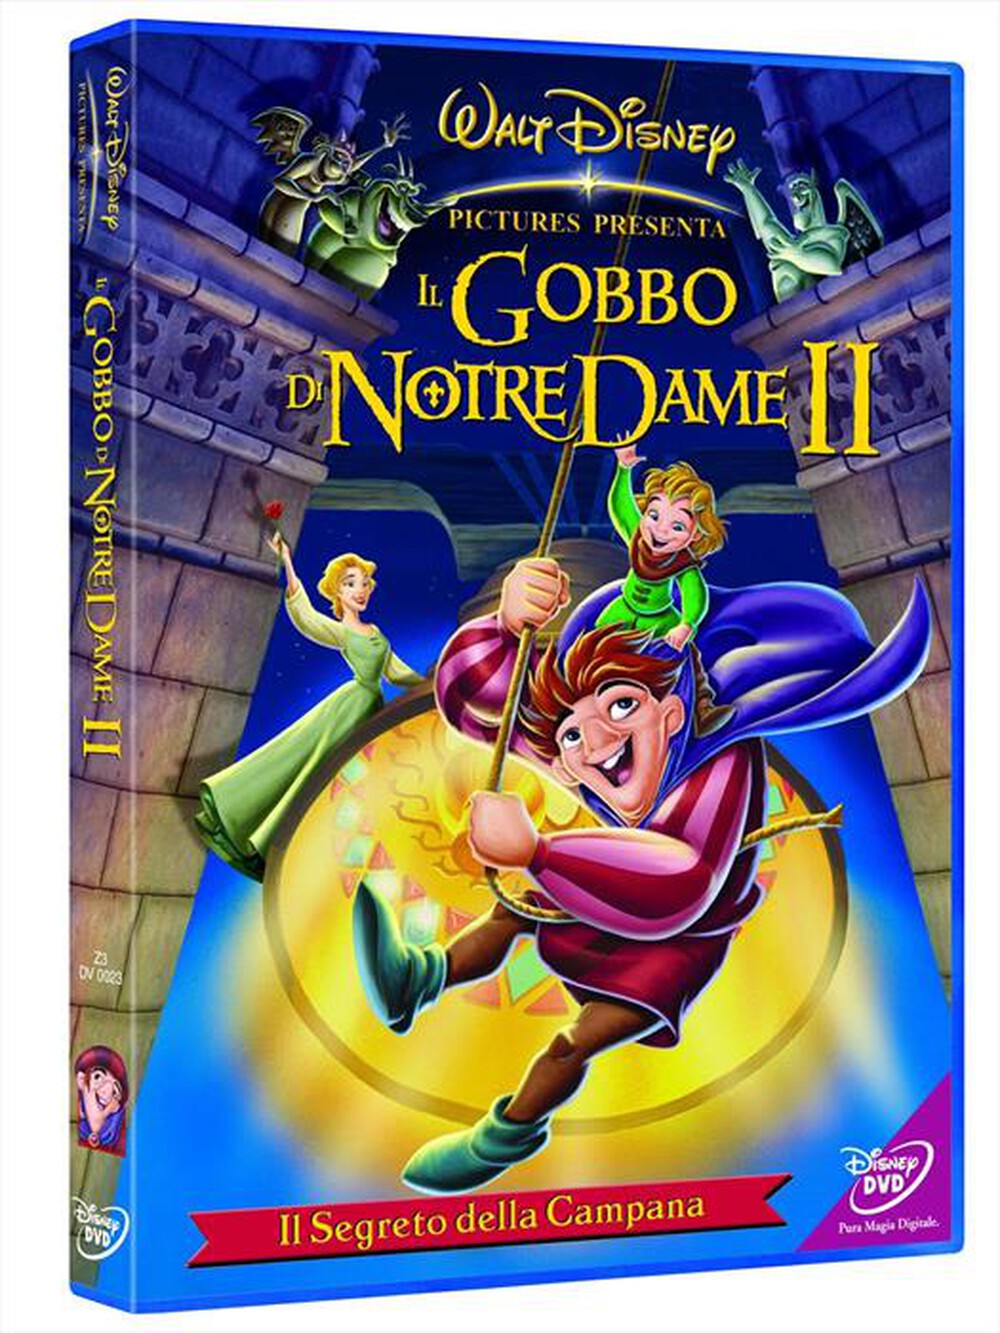 "WALT DISNEY - Gobbo Di Notre Dame 2 (Il) - "